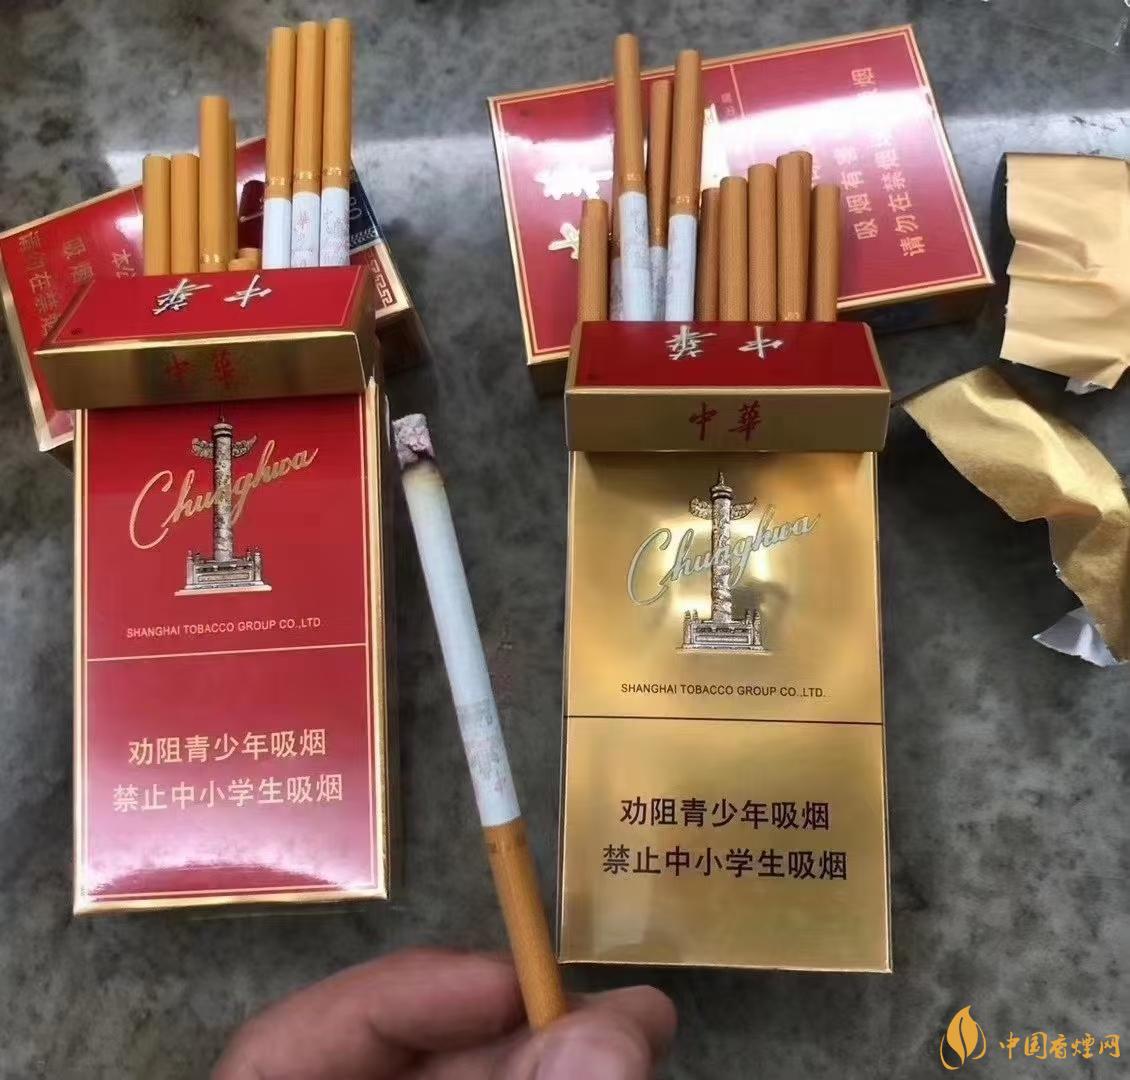 云烟细支云龙 - 香烟品鉴 - 烟悦网论坛